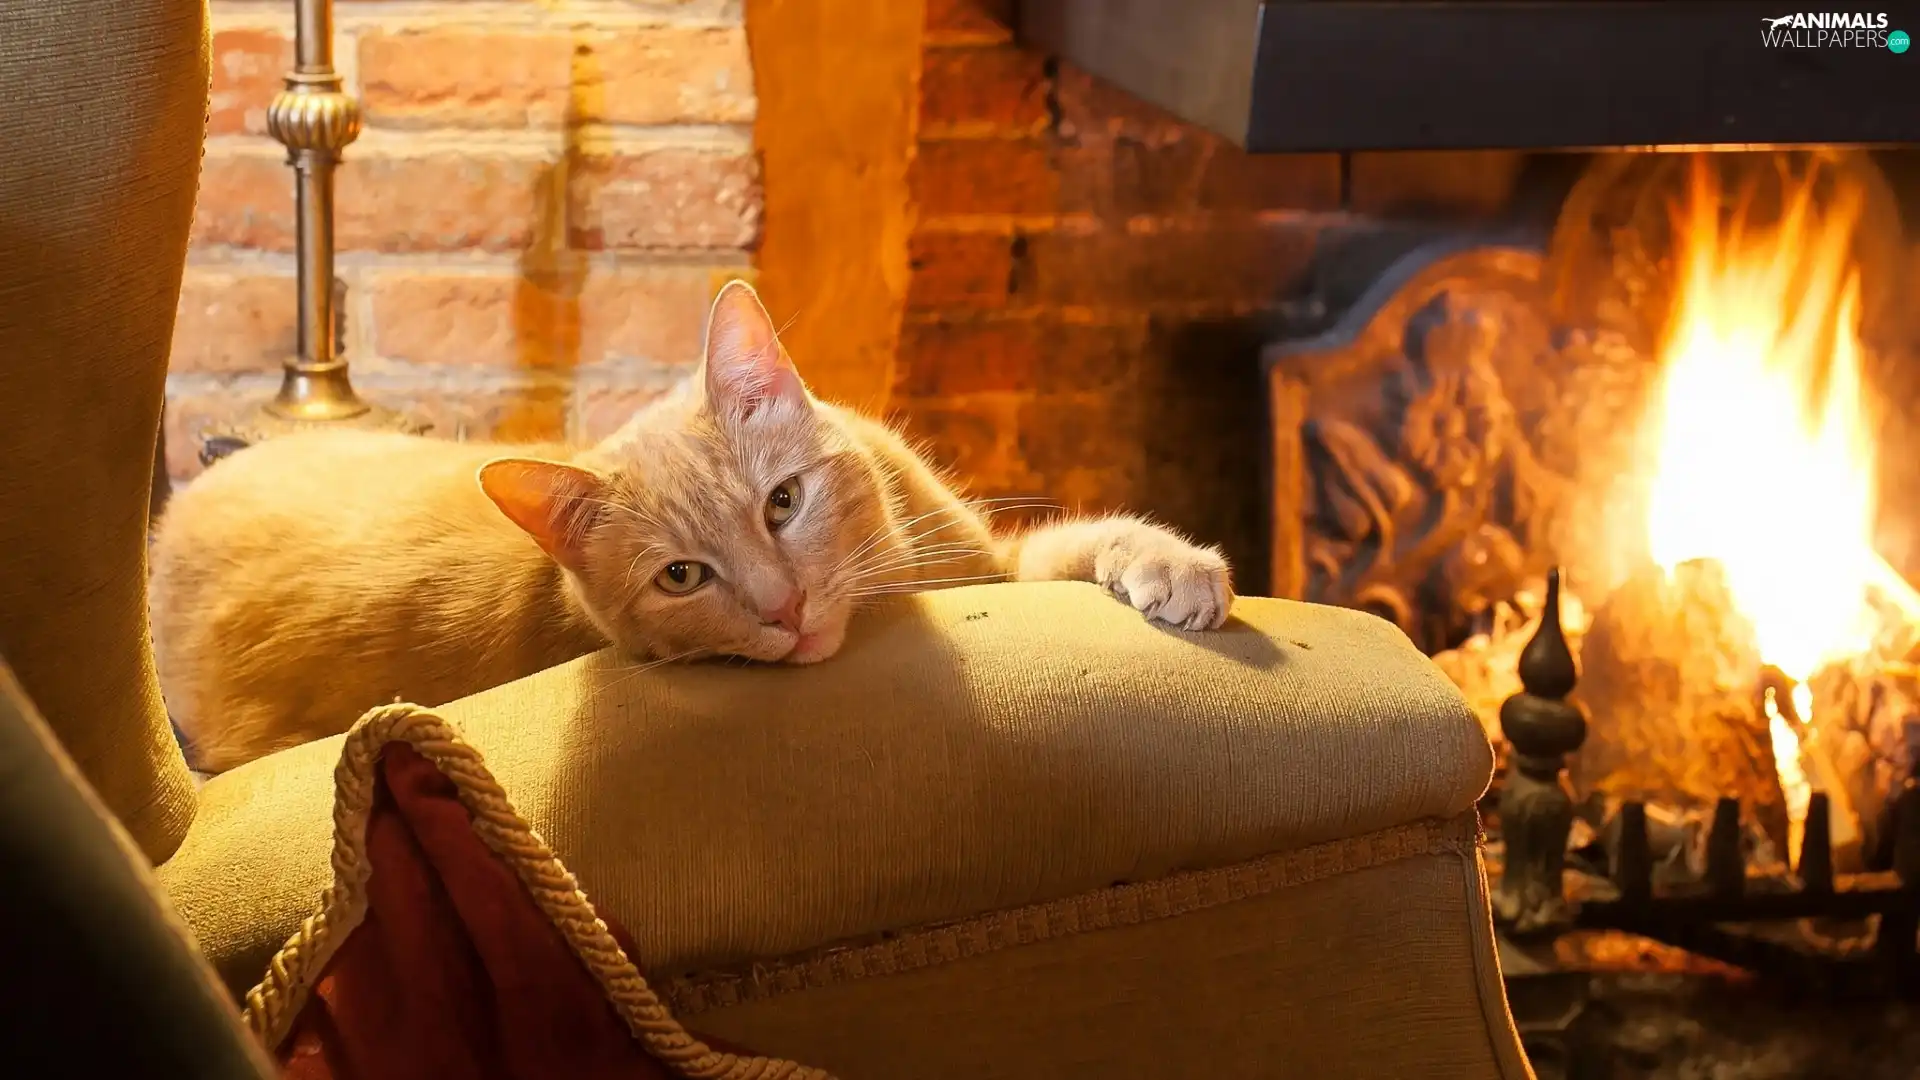 ginger, Armchair, burner chimney, cat